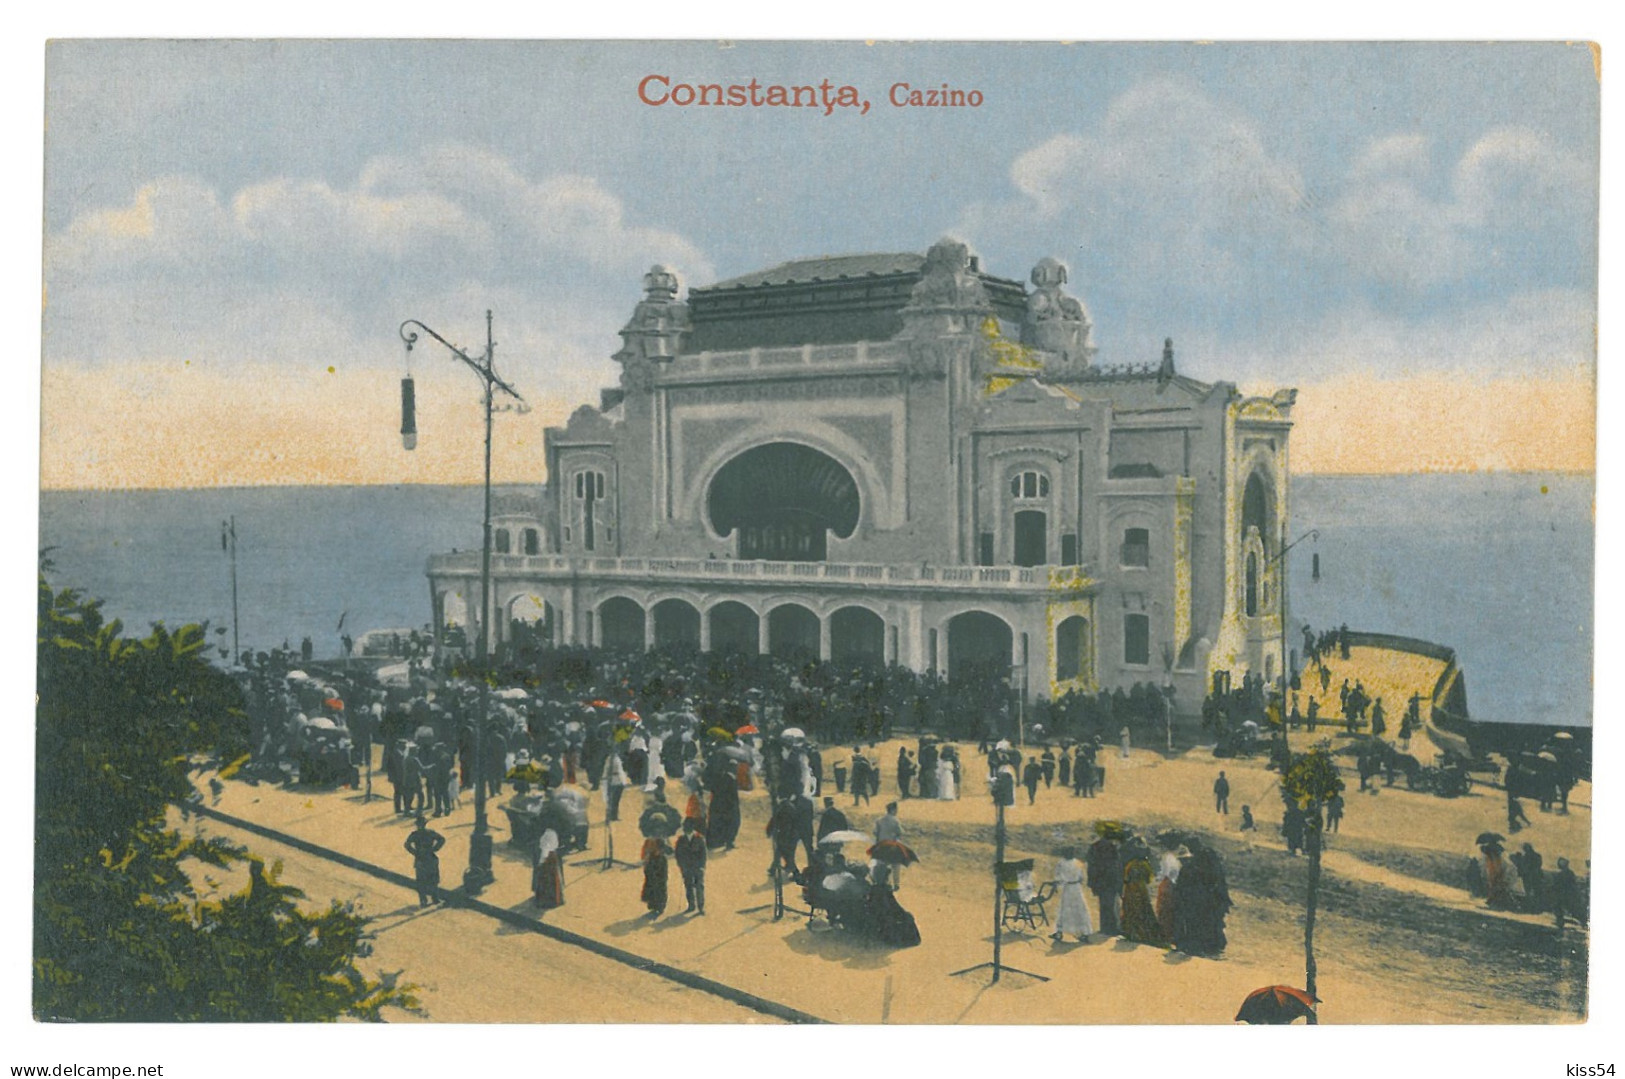 RO 06 - 16272 CONSTANTA, Casino, Romania - Old Postcard - Unused - 1918 - Roumanie